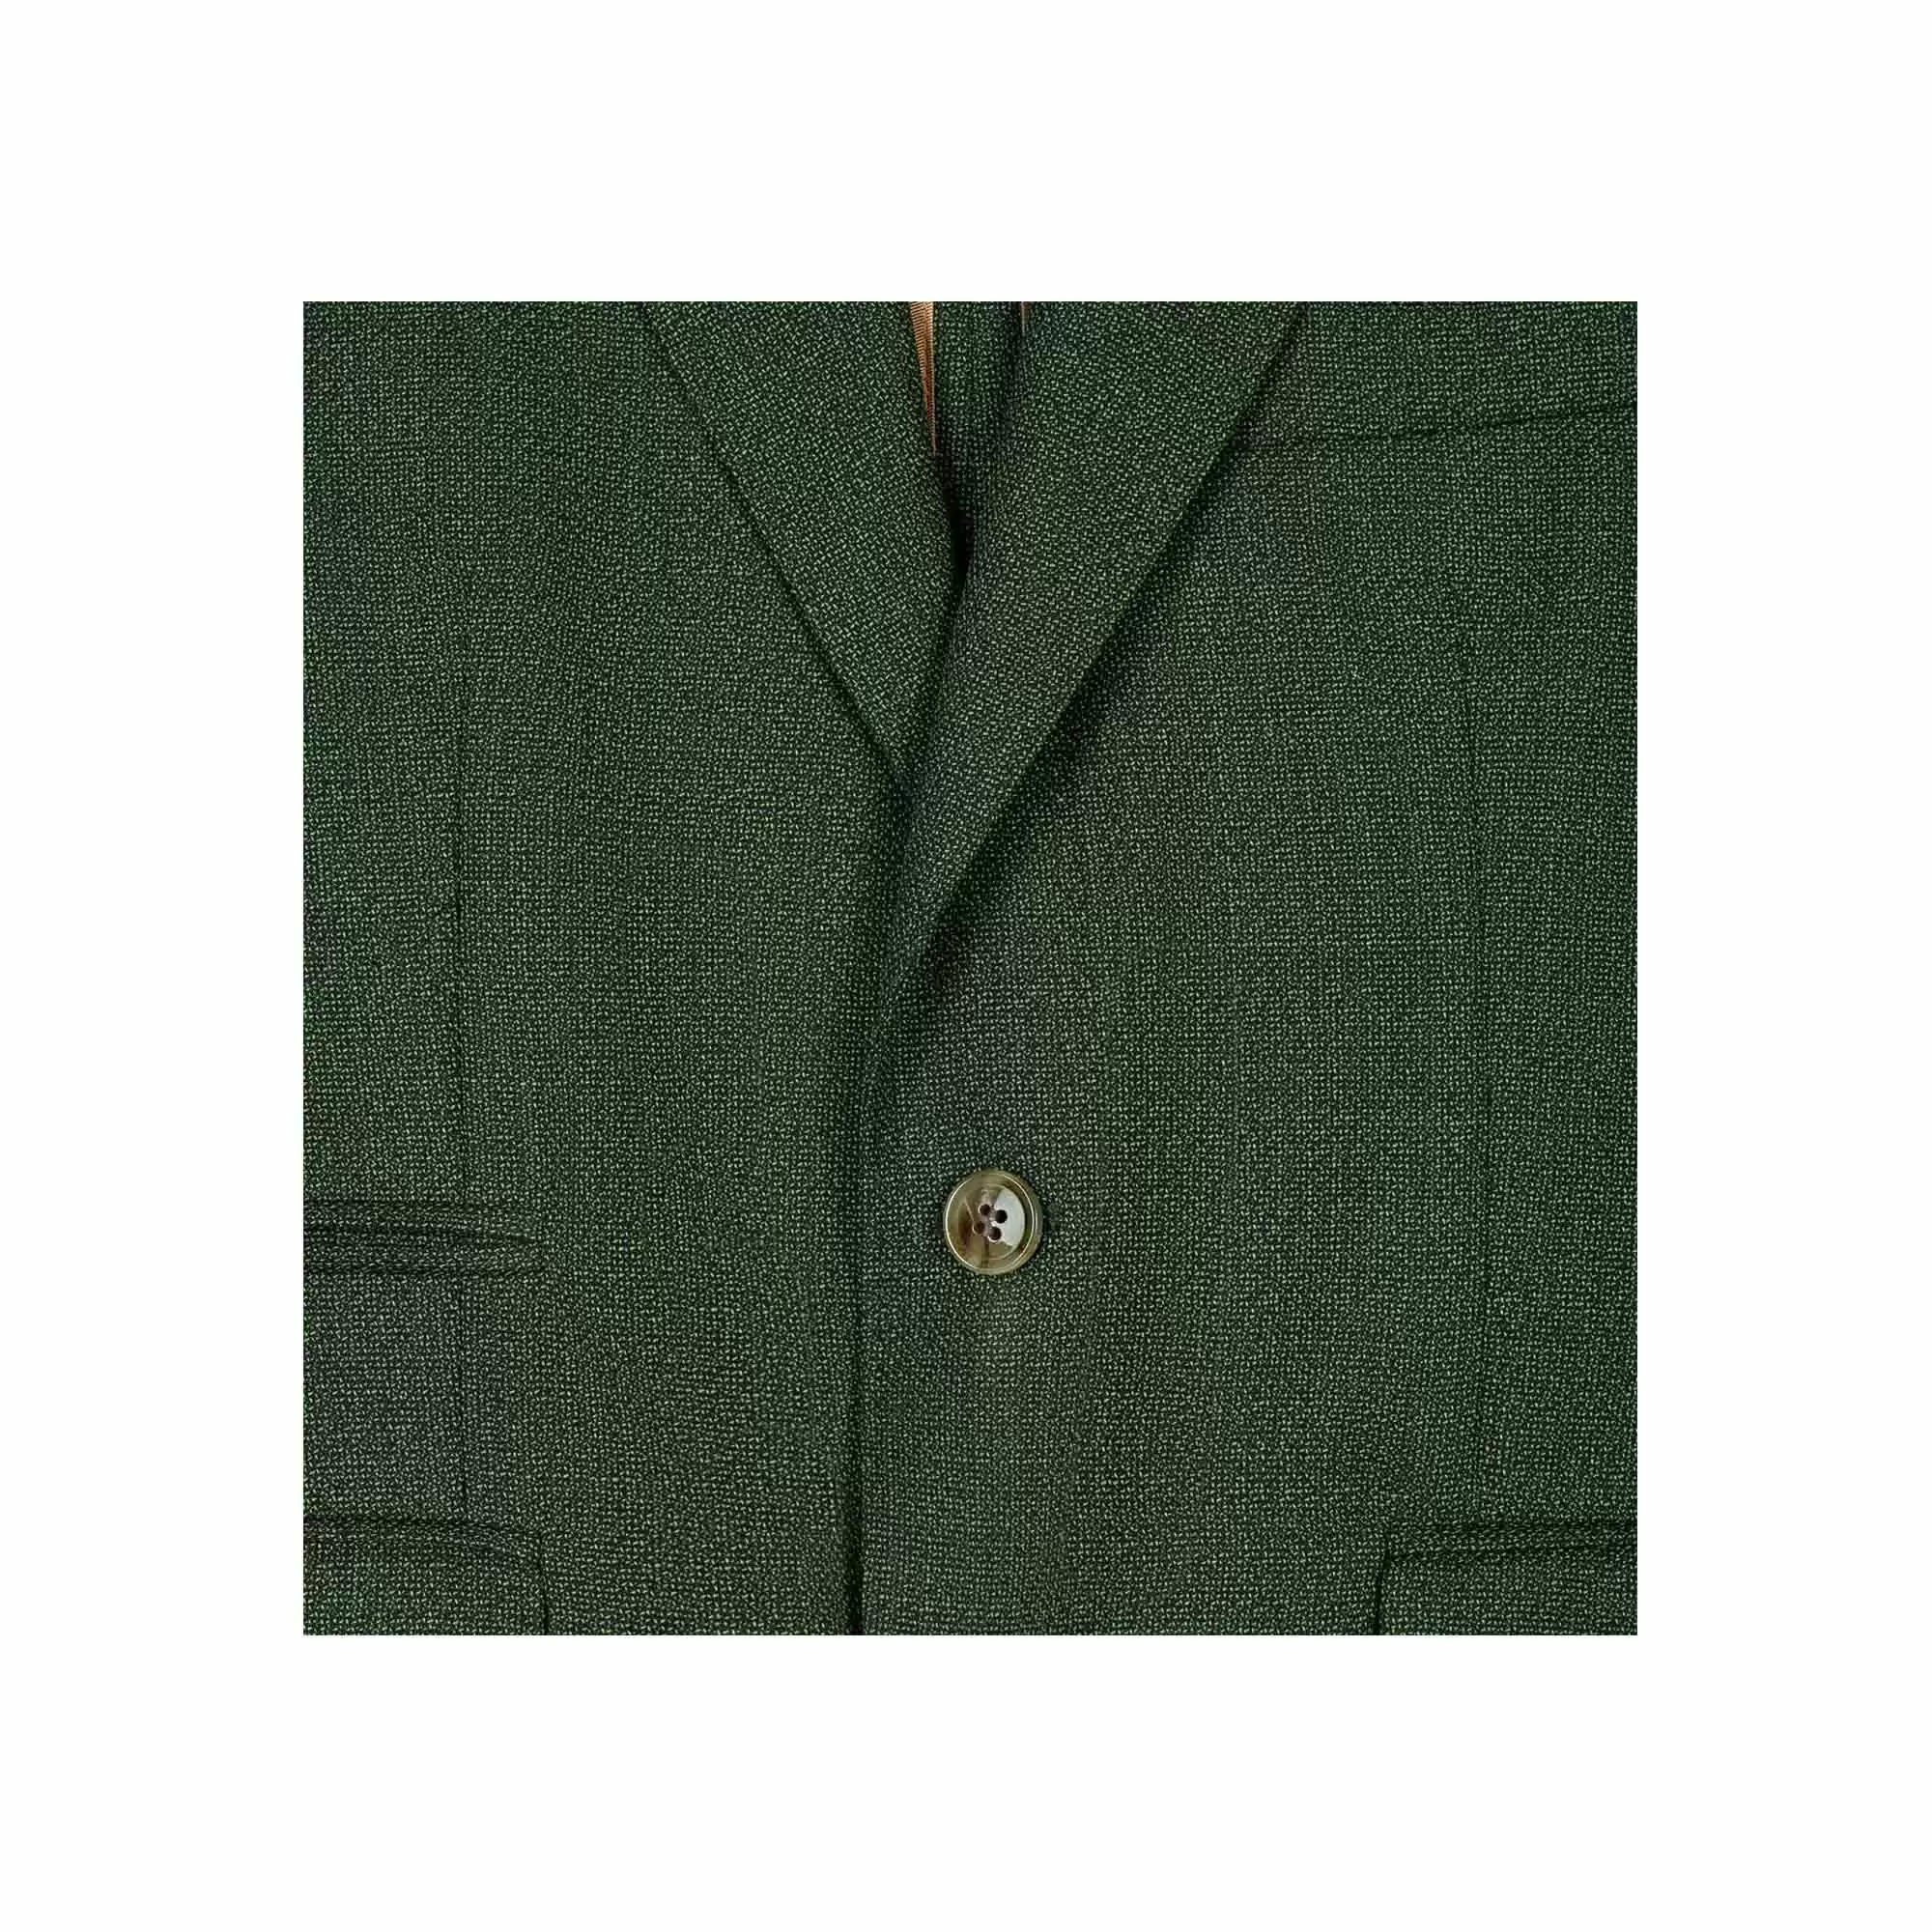 Ανδρικό Σακάκι Πράσινο Tailor Italian Wear